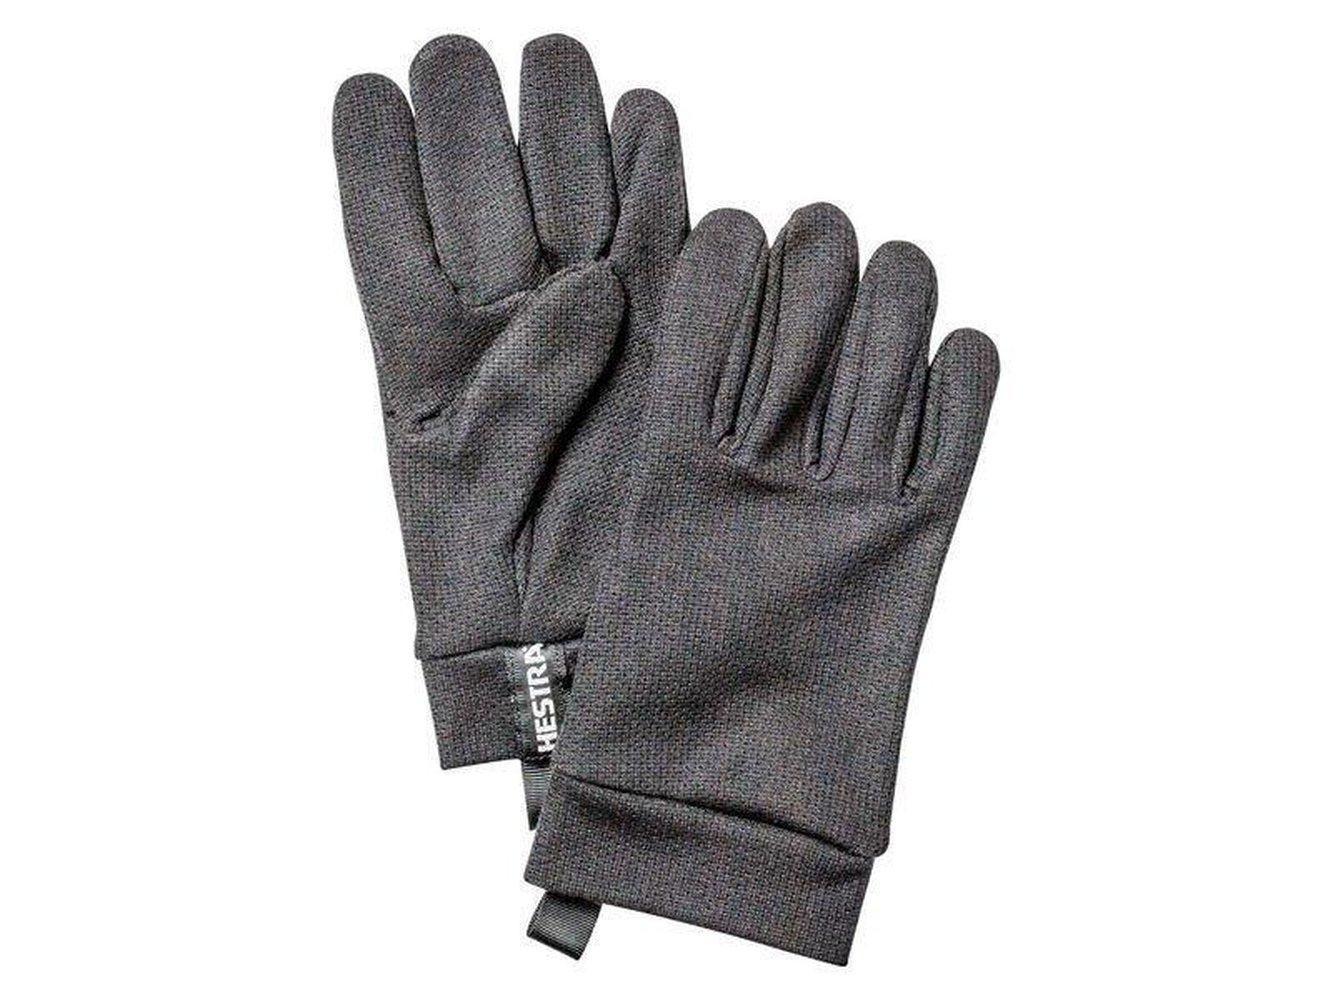 Polartec Power Dry - 5 finger Gloves Hestra Charcoal 9 